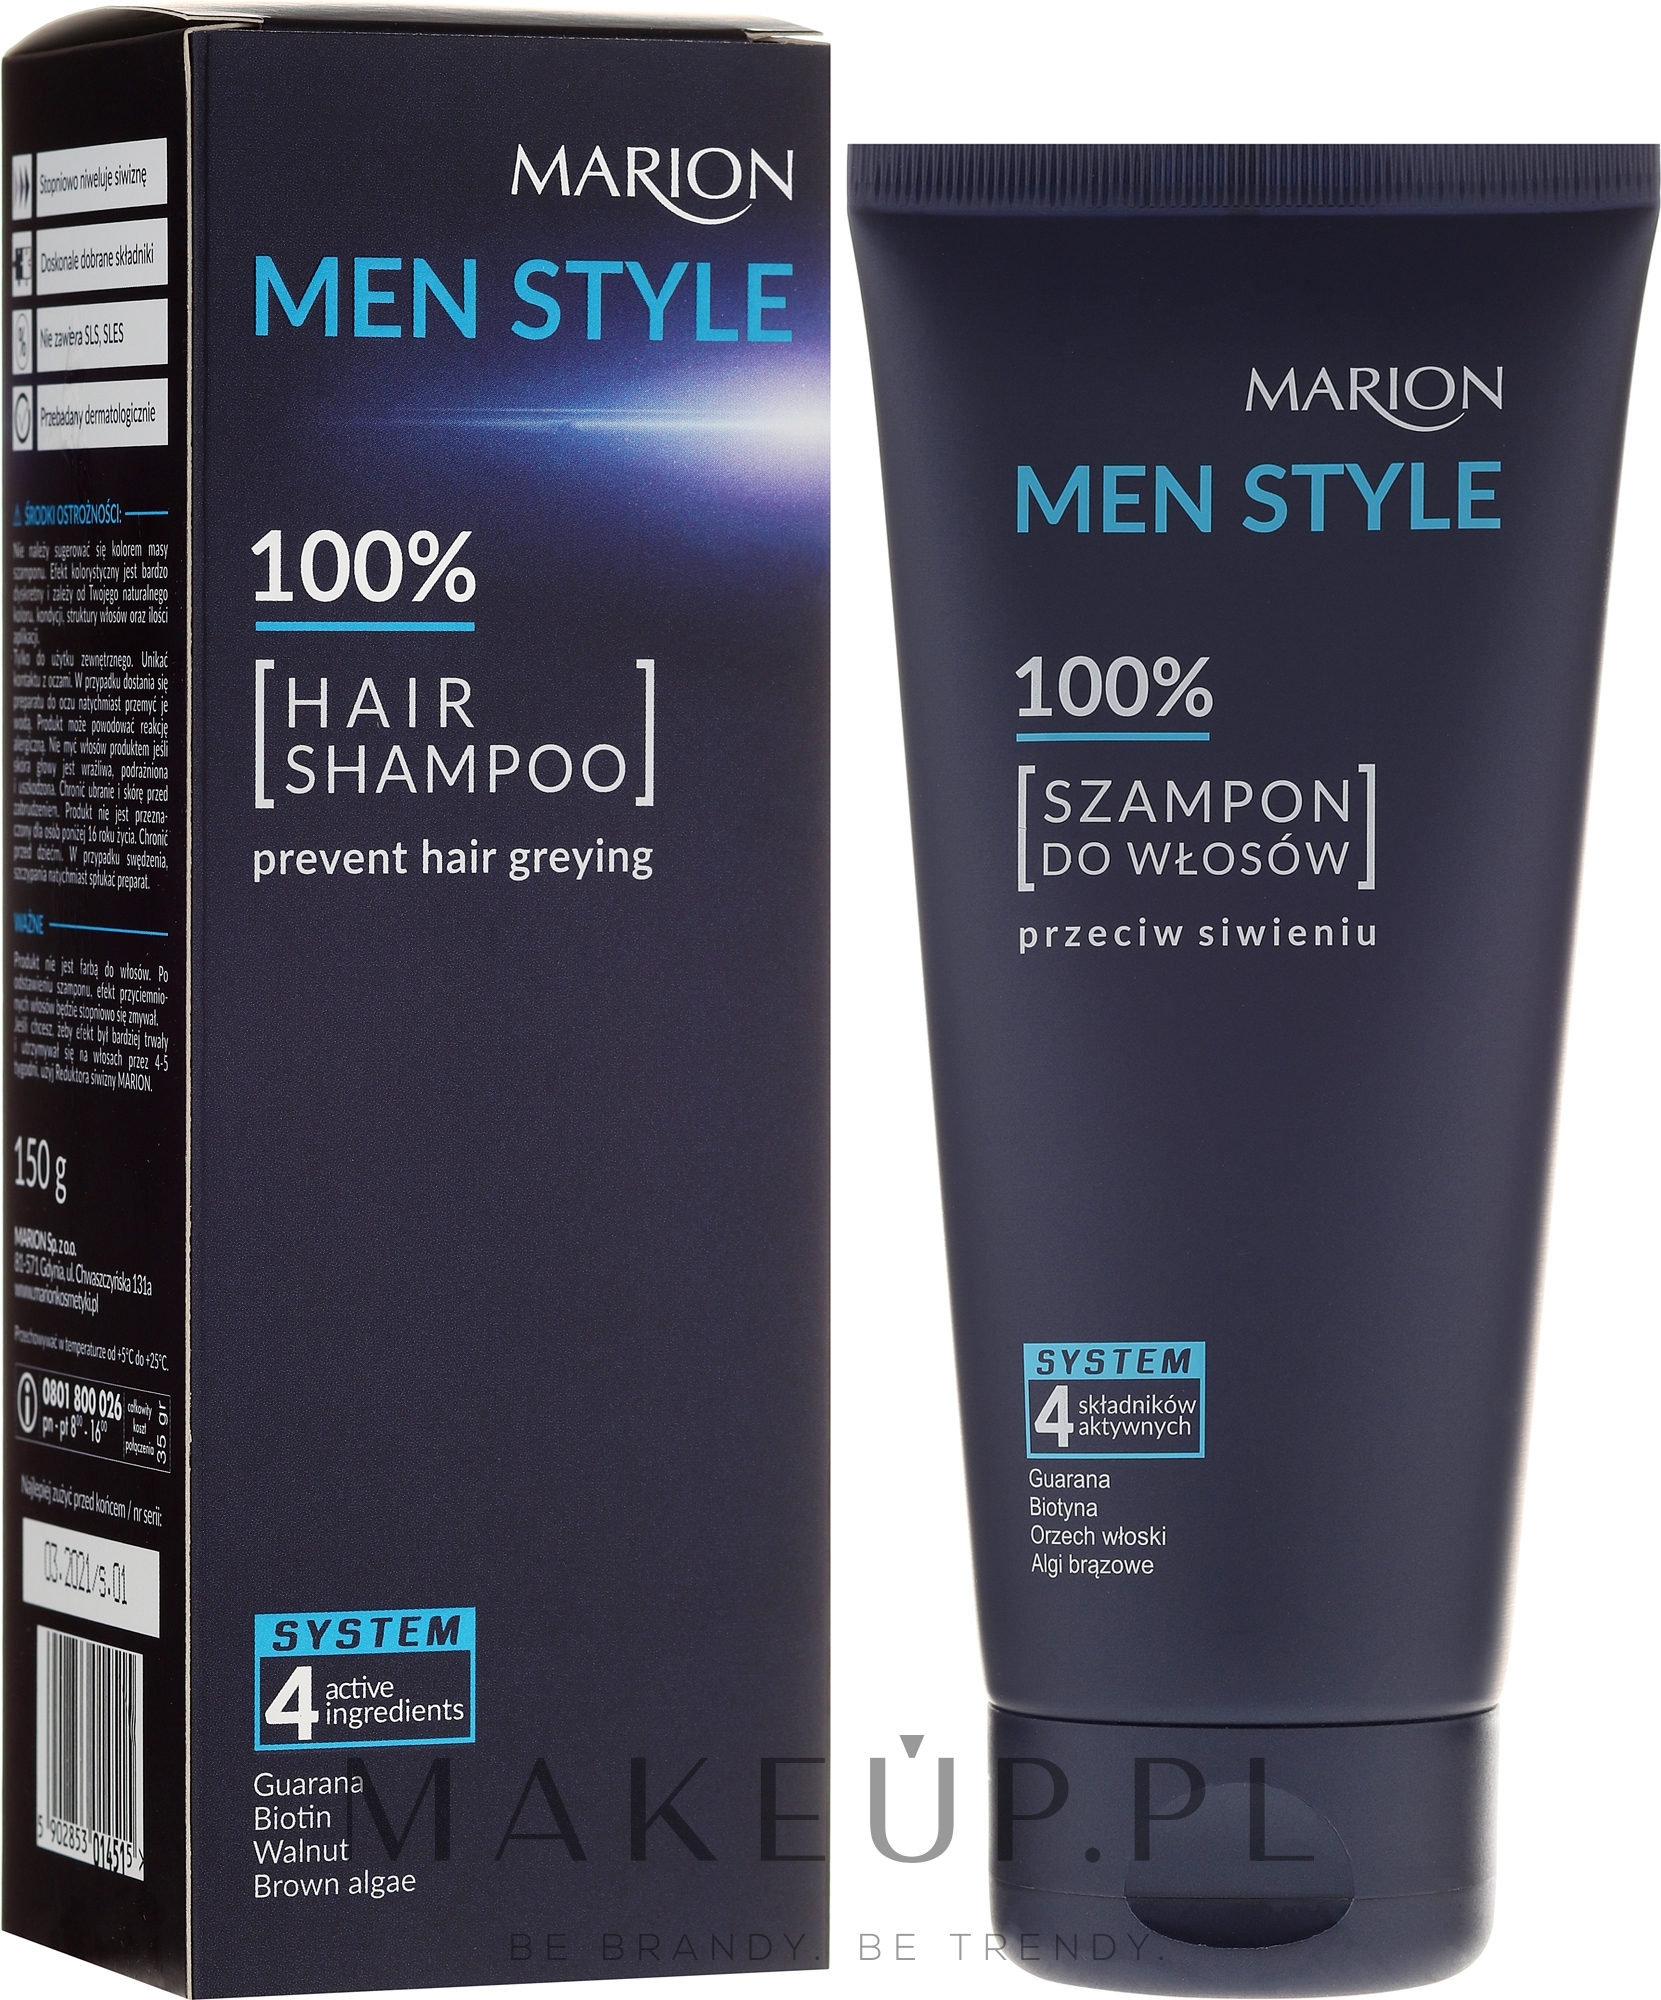 men style szampon przeciw siwieniu forum